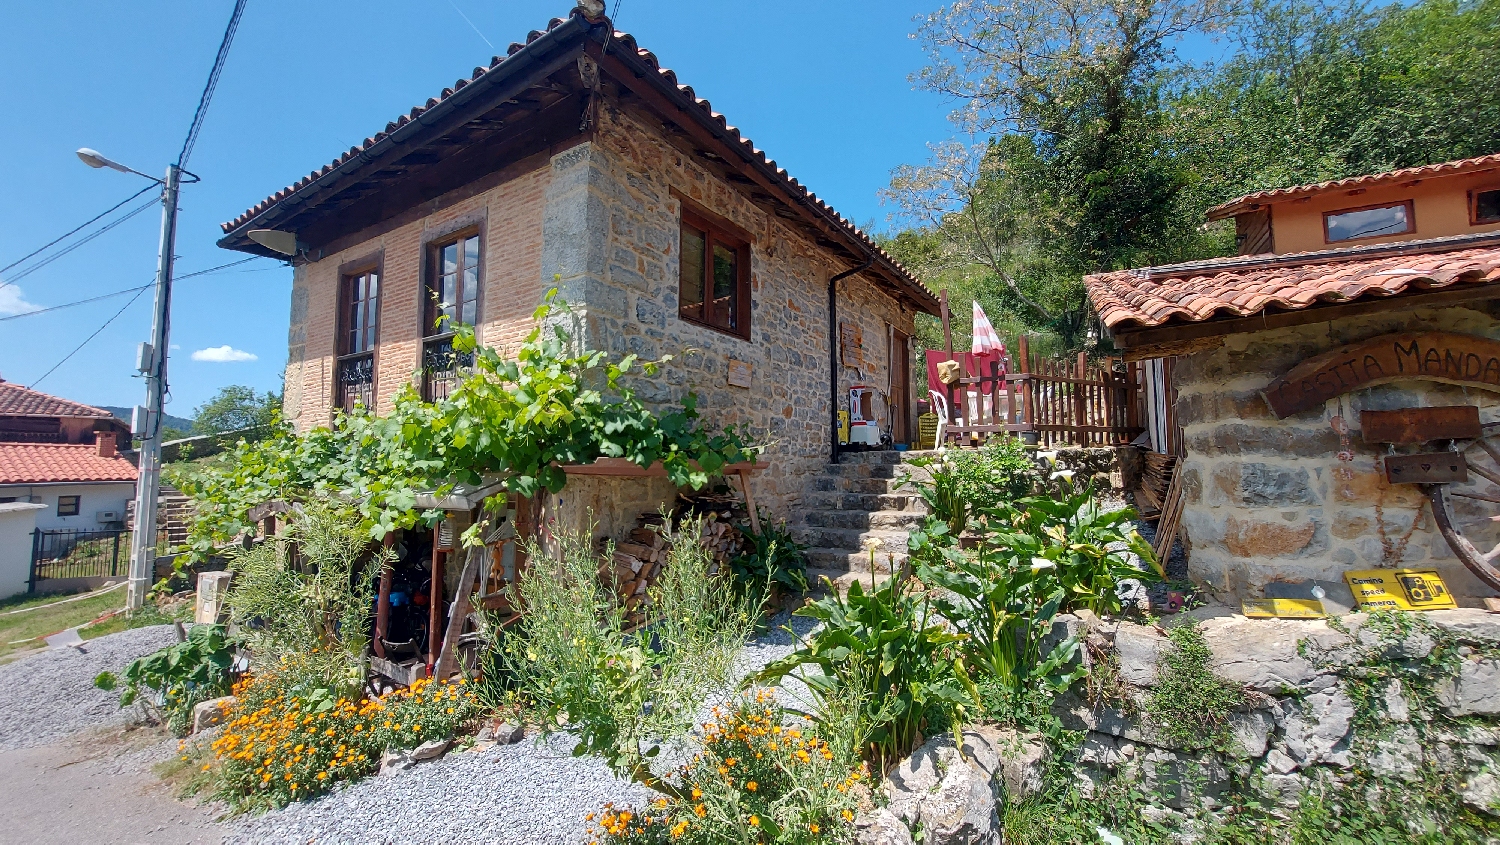 Camino Primitivo, San Marcelo, a Casita Mandala albergue, pihenőhely